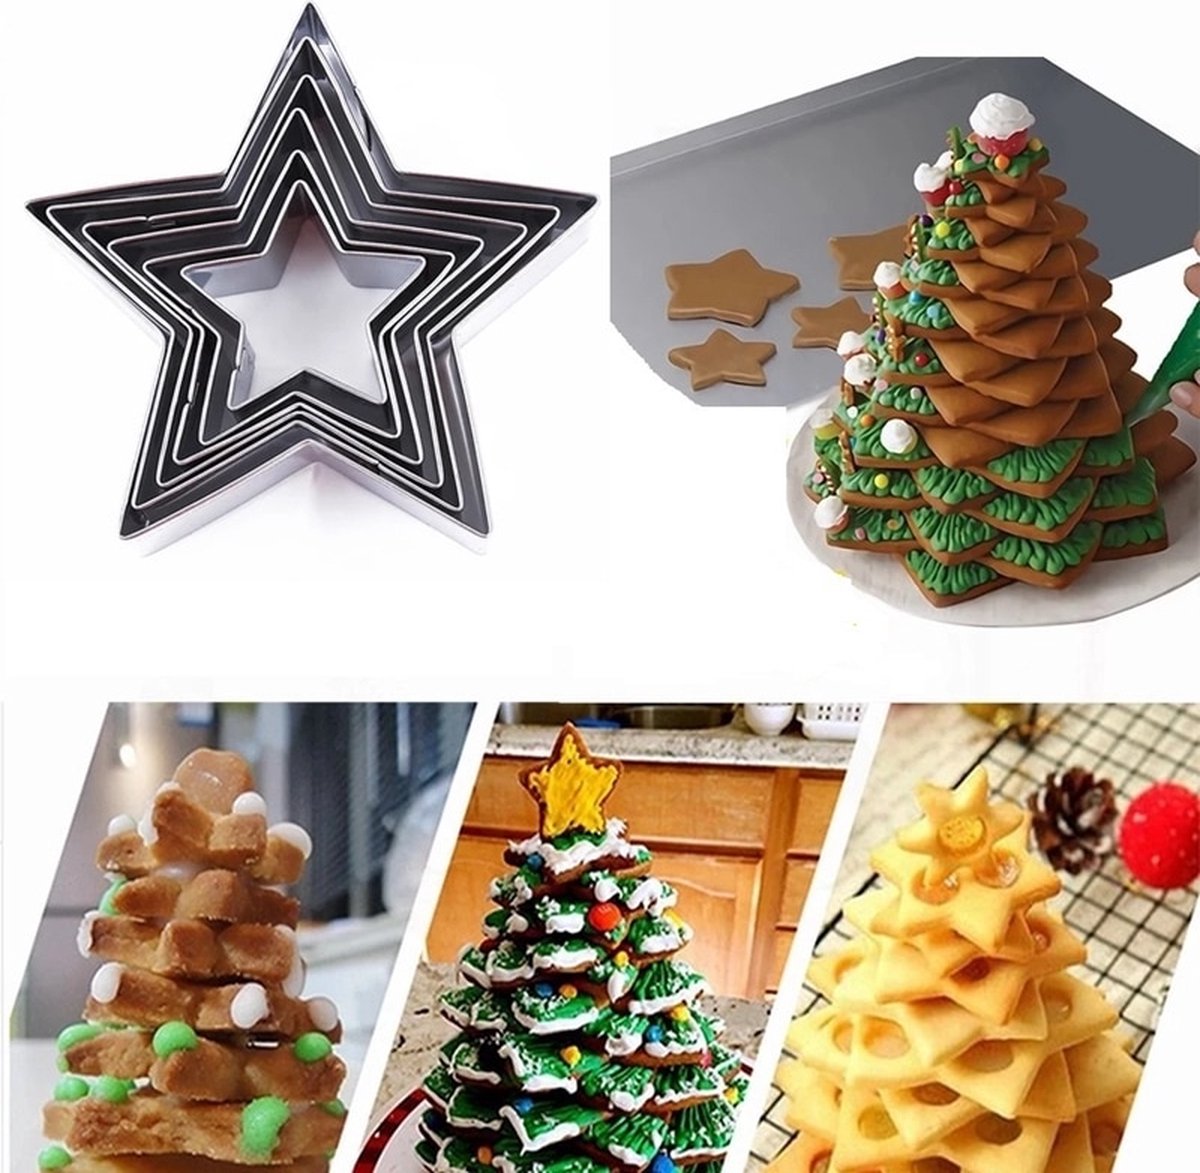 Winkrs | Uitsteekvorm Set 5x Ster | 4-8CM | Bakvorm, Koekvorm, Kleivorm, etc - Sterren koekjes/kerstboom bakken